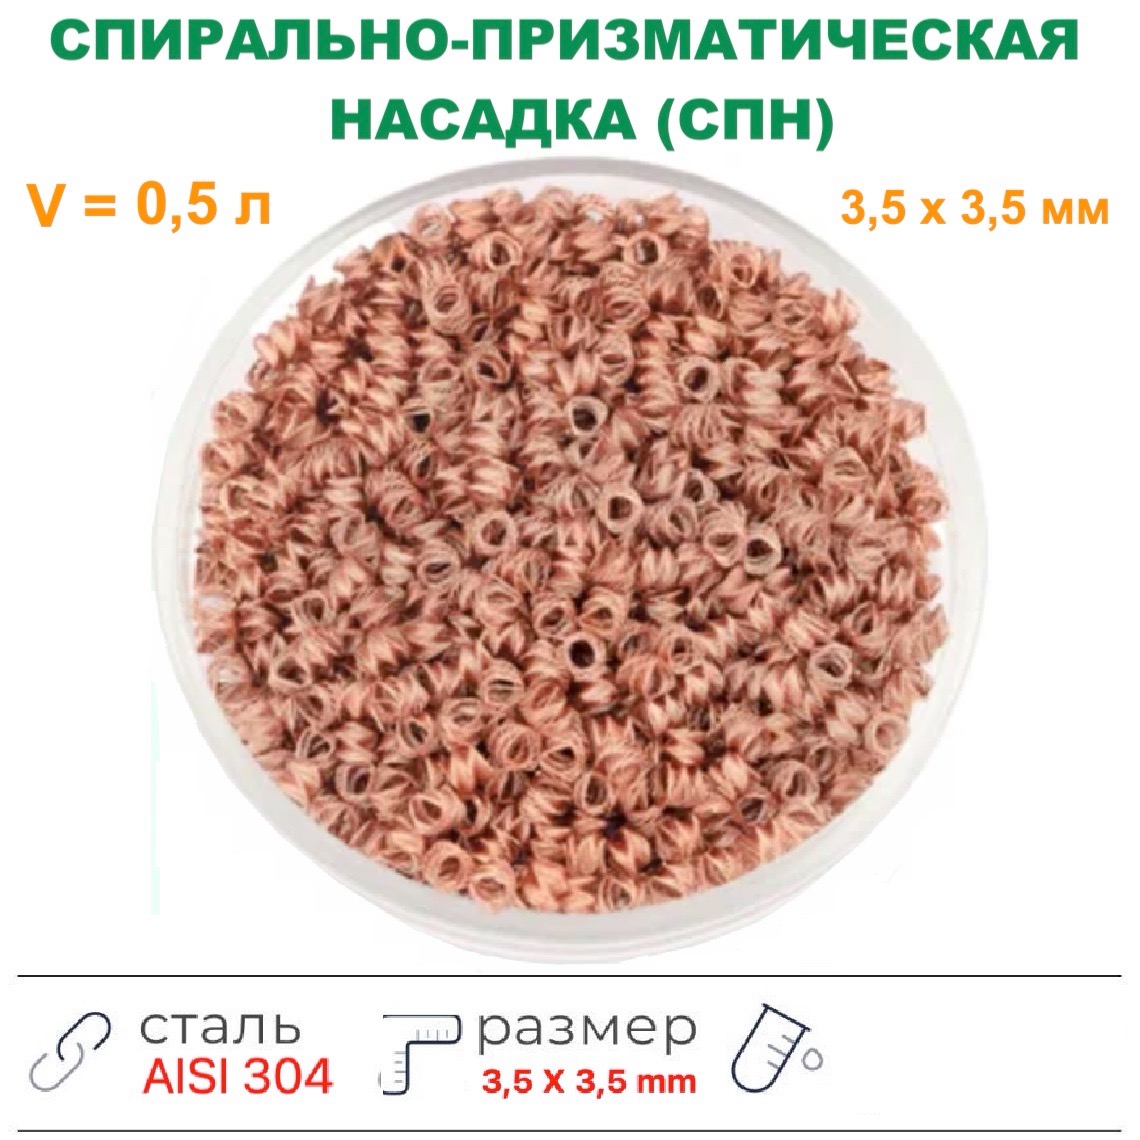 Насадка Селиваненко медь (3,5X3,5 мм), 0,5 л